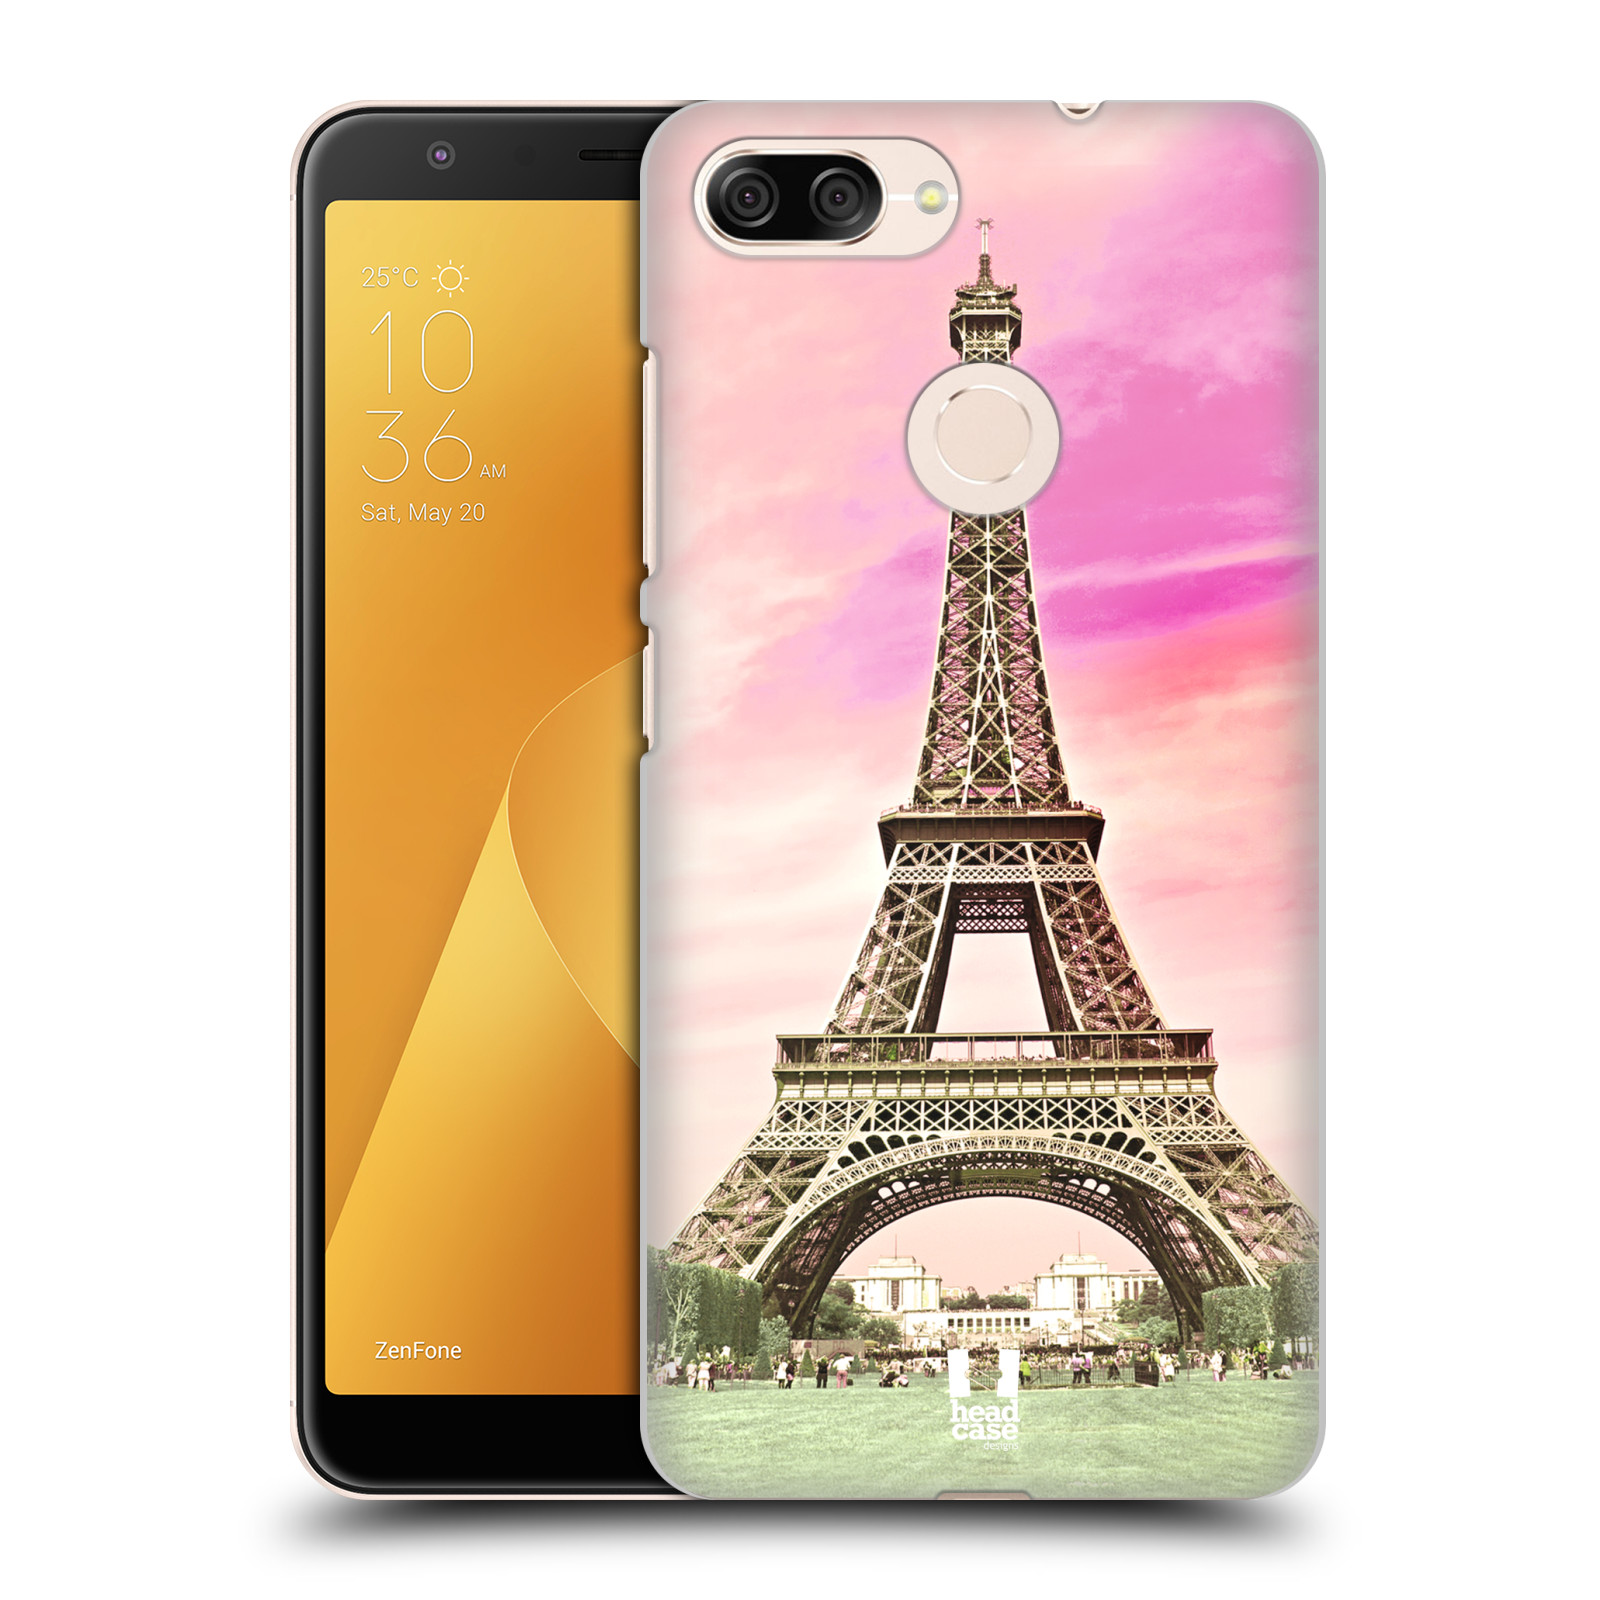 Pouzdro na mobil ASUS ZENFONE Max Plus M1 - HEAD CASE - historická místa Eiffelova věž Paříž